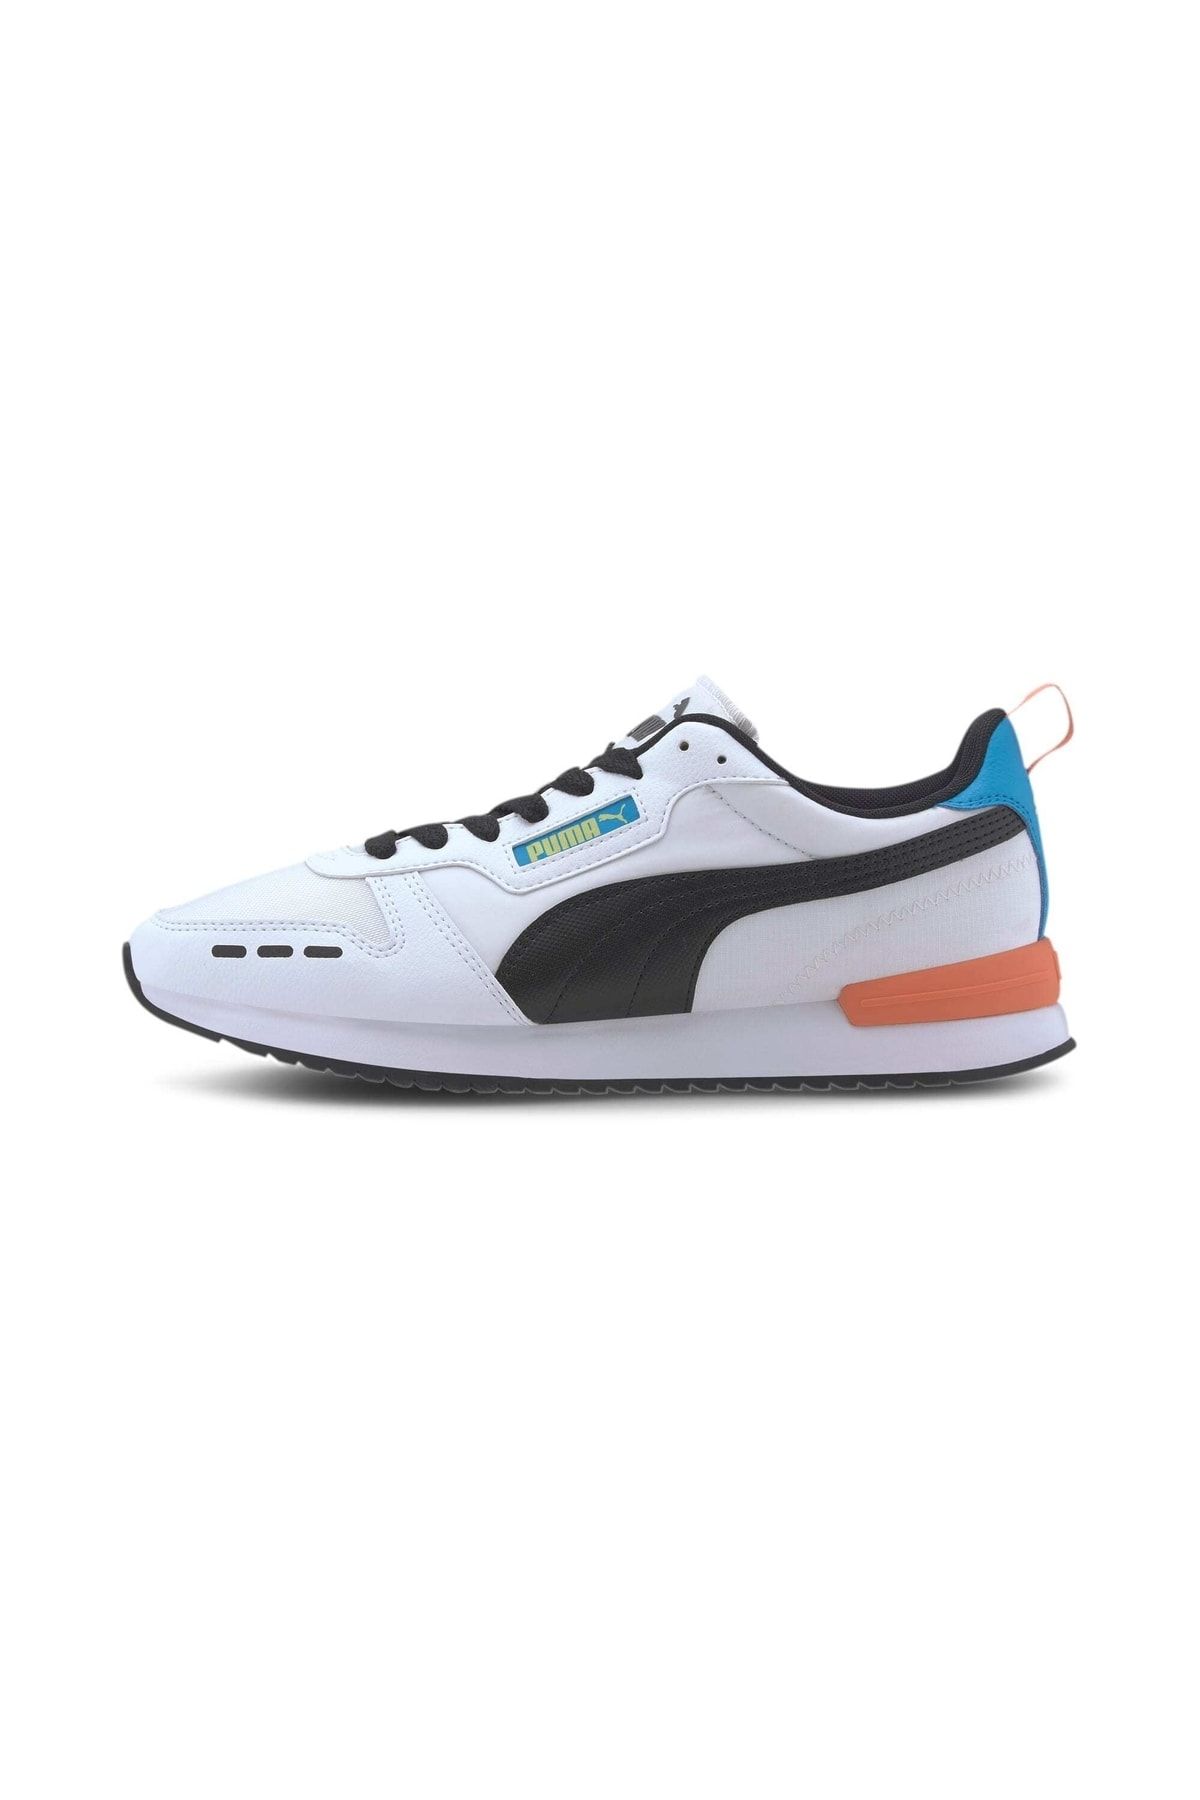 Puma Erkek Neon Beyaz Spor Ayakkabı